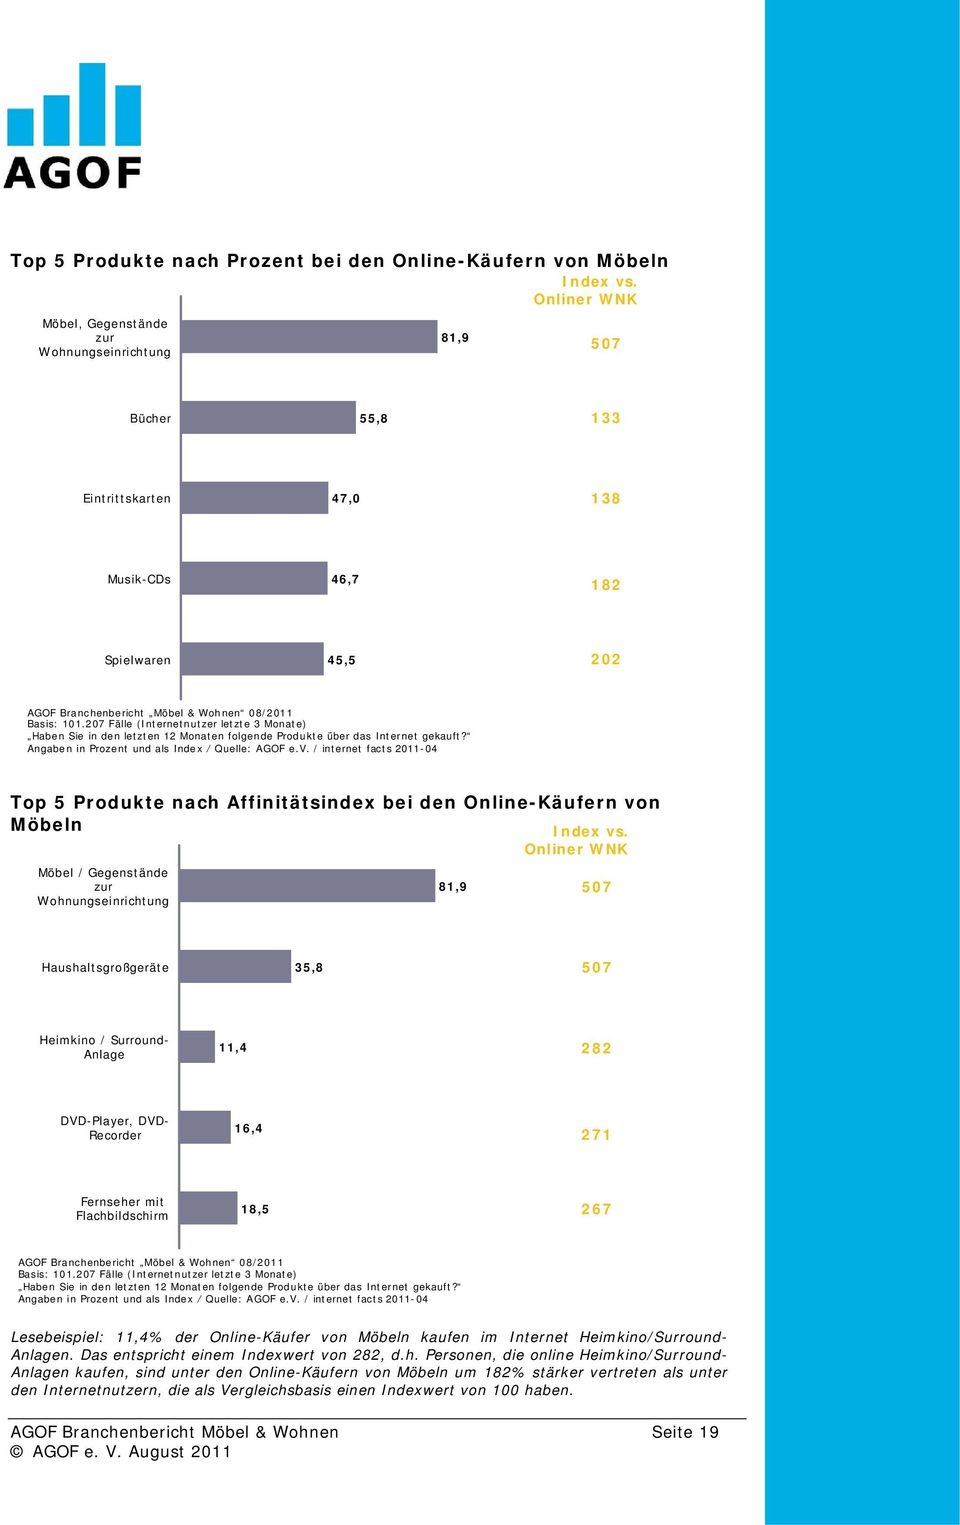 Internet gekauft? Angaben in Prozent und als Index / Quelle: AGOF e.v. / internet facts 2011-04 Top 5 Produkte nach Affinitätsindex bei den Online-Käufern von Möbeln Index vs.